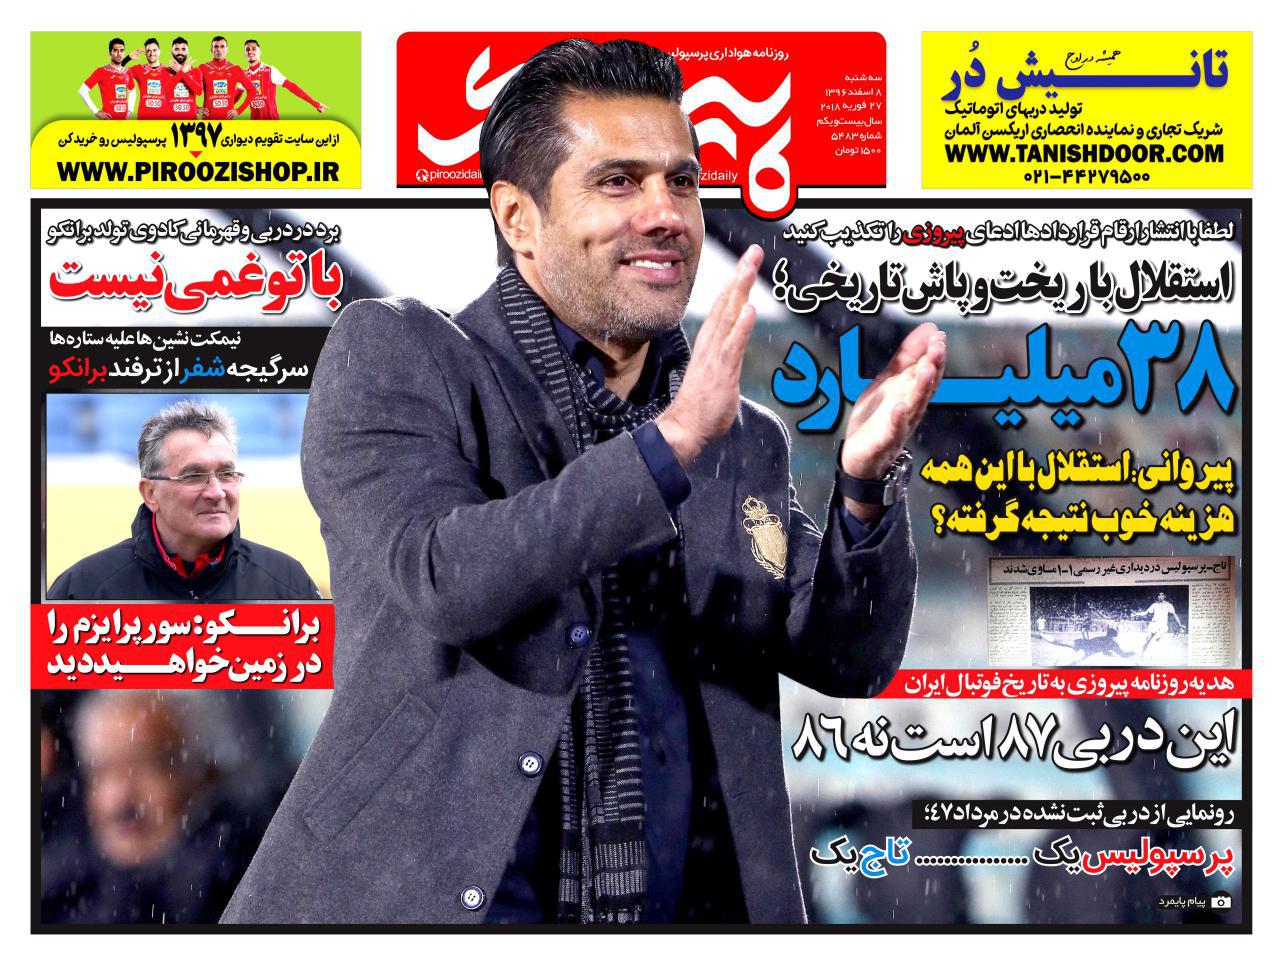 جلد روزنامه پیروزی، 8 اسفند 96